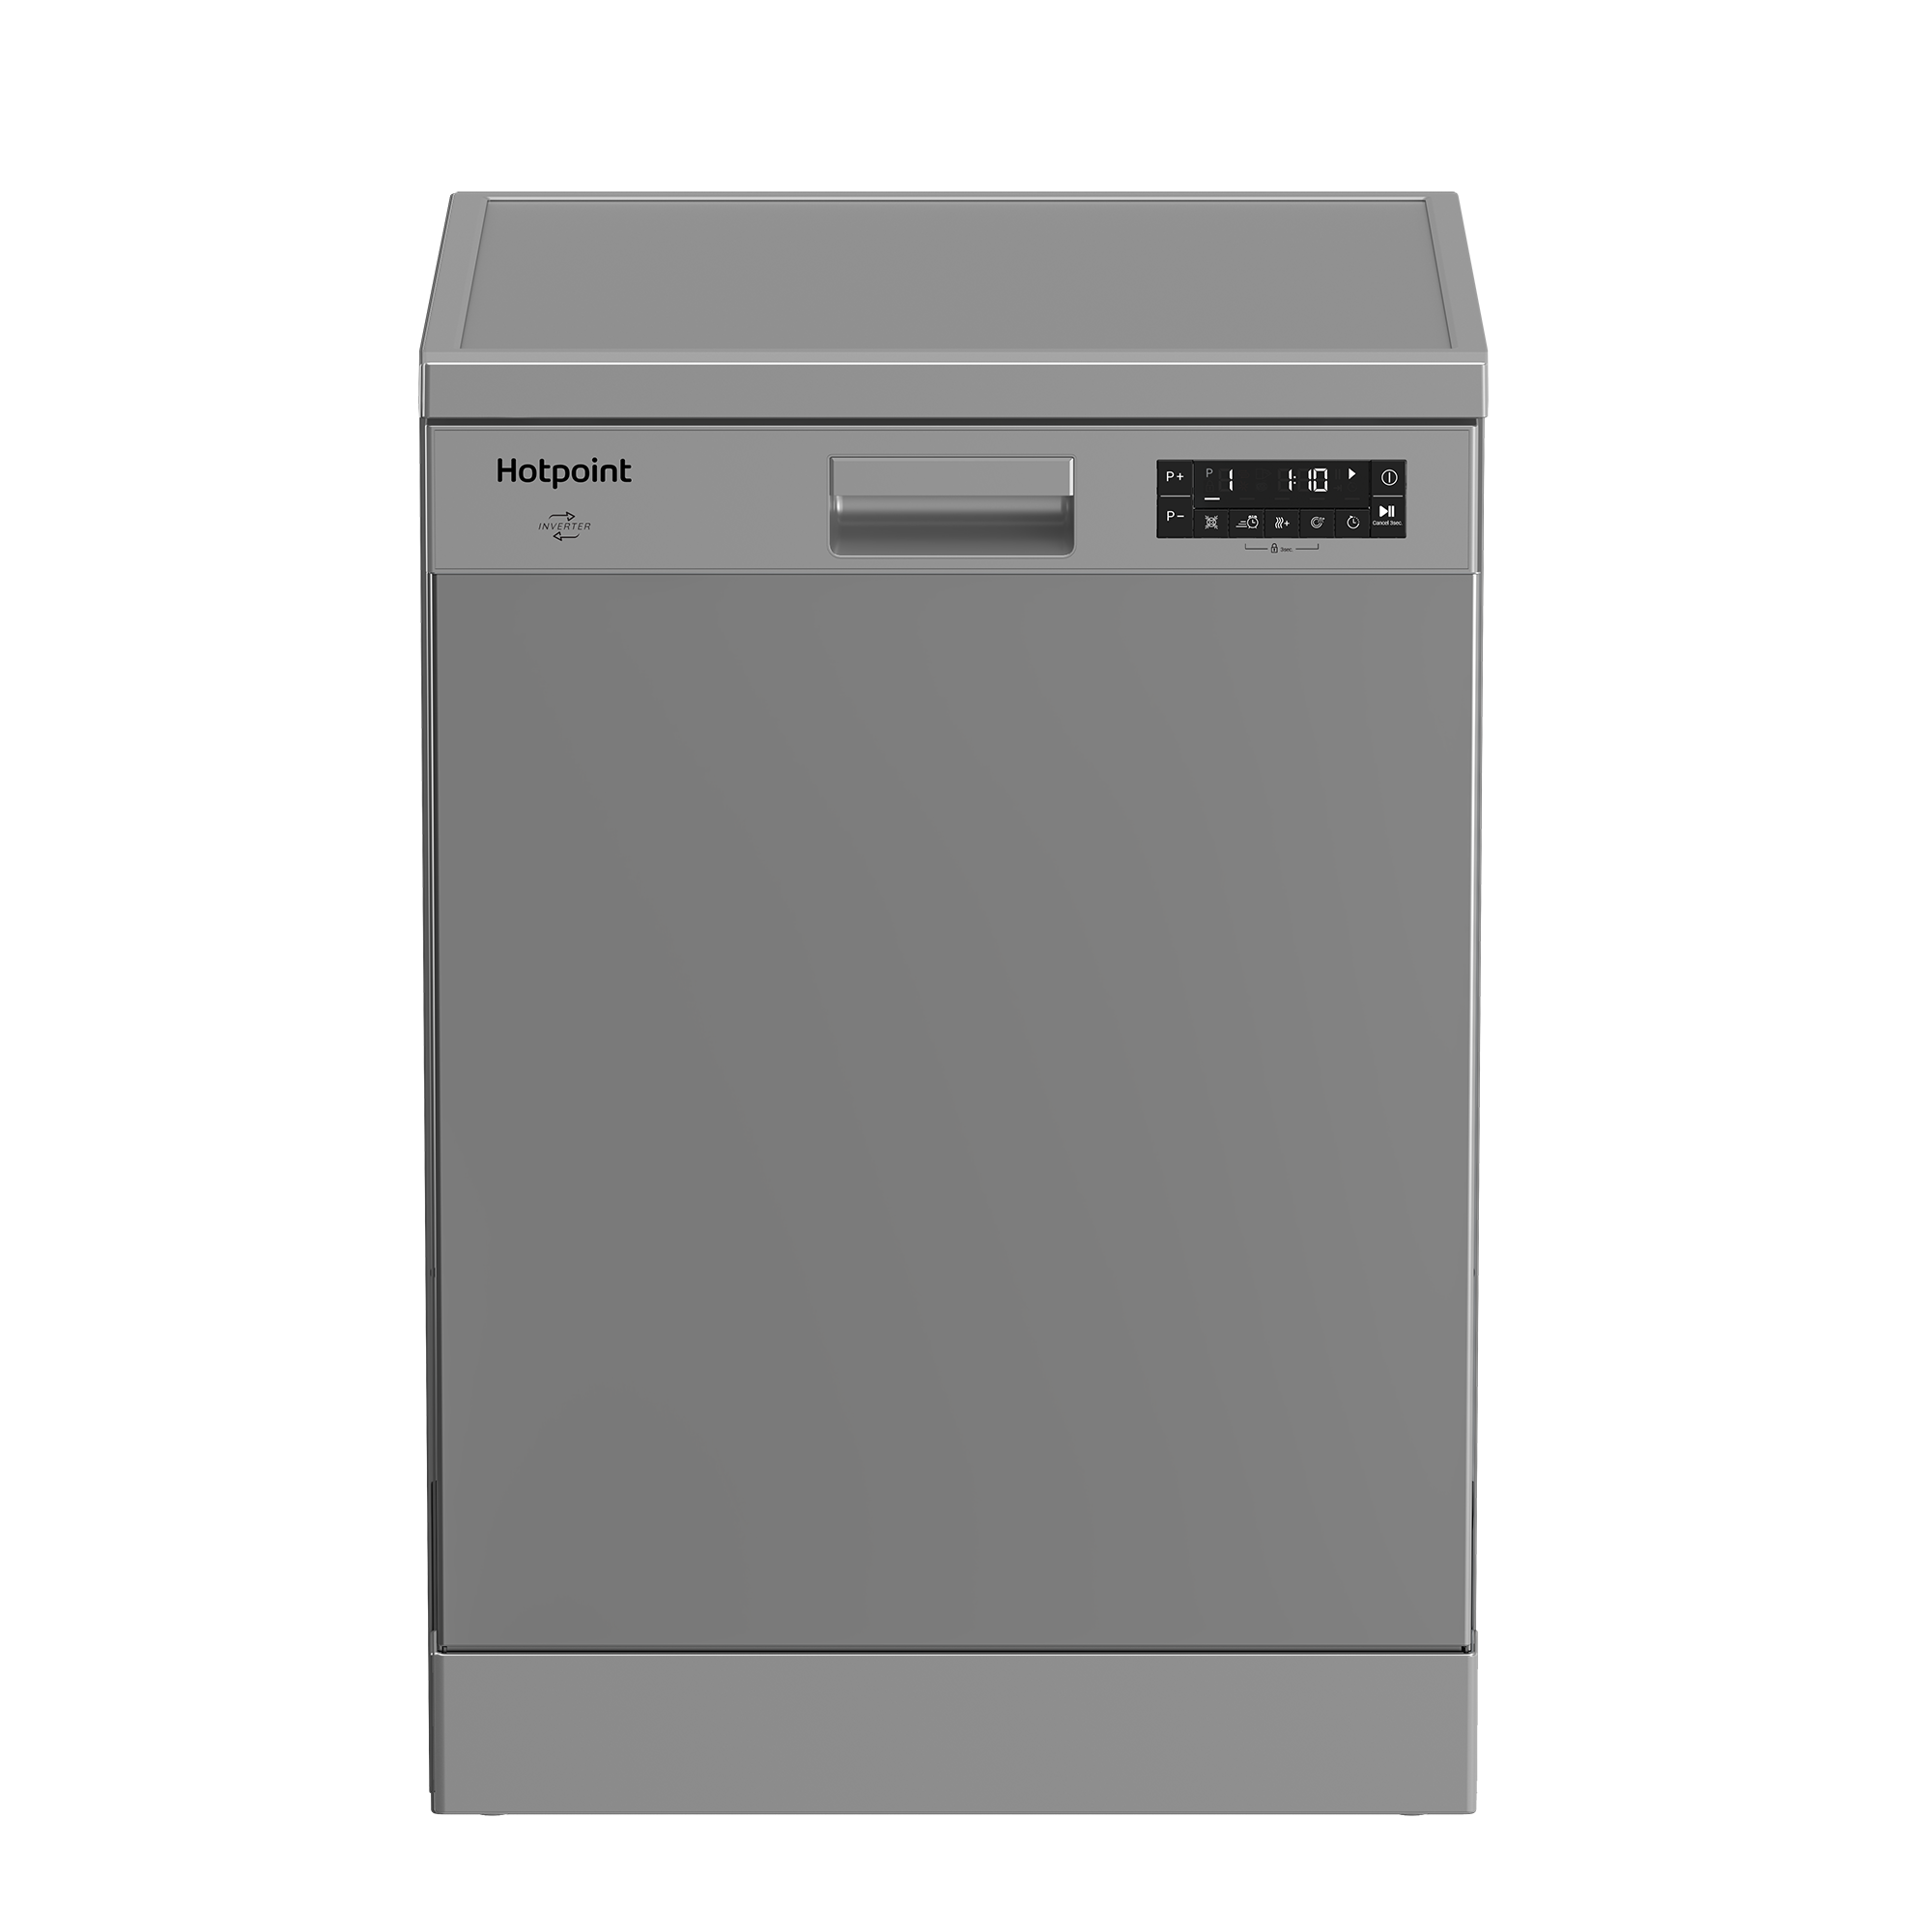 Встраиваемая посудомоечная машина Hotpoint HF 5C84 DW X 60 см серебристый